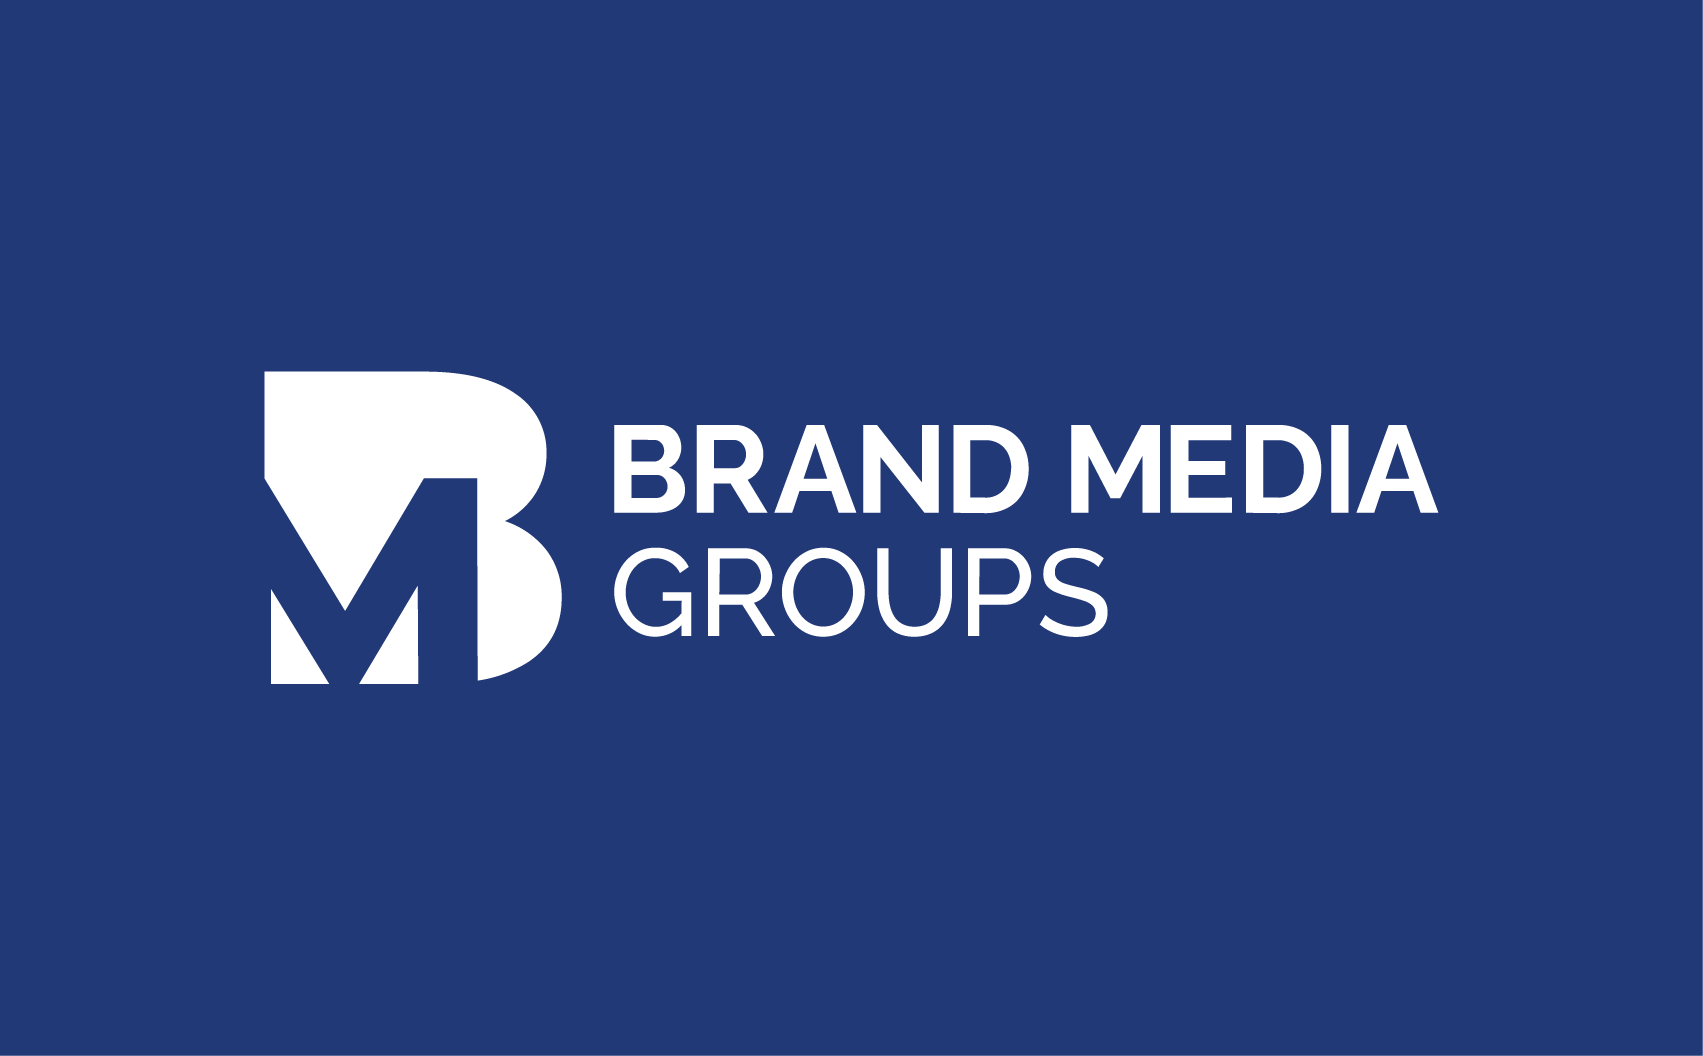 Brand Media Groups